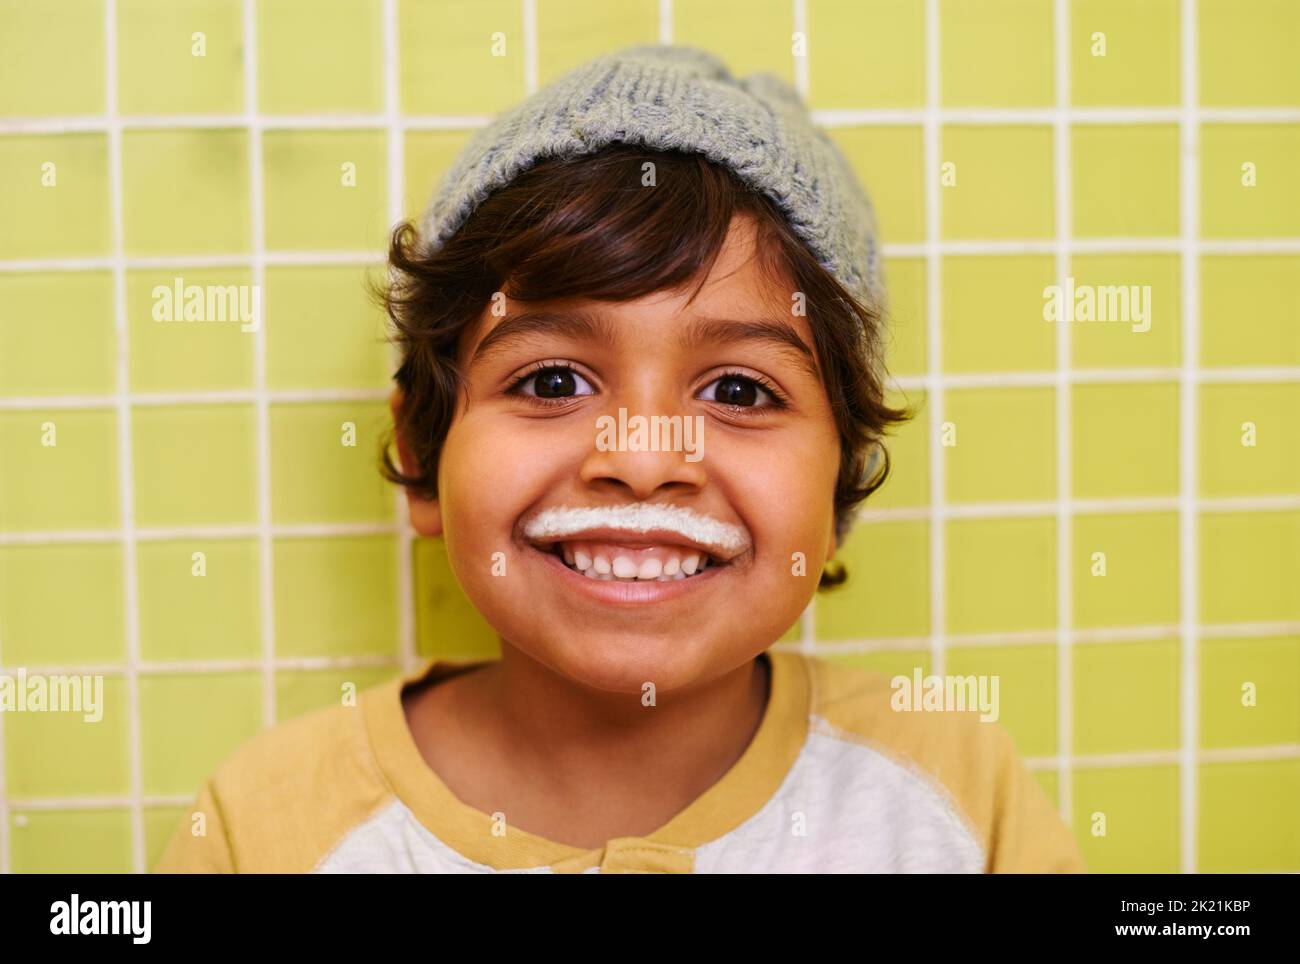 Hes got the milkshake moustache. a cute little boy with a milk moustache. Stock Photo